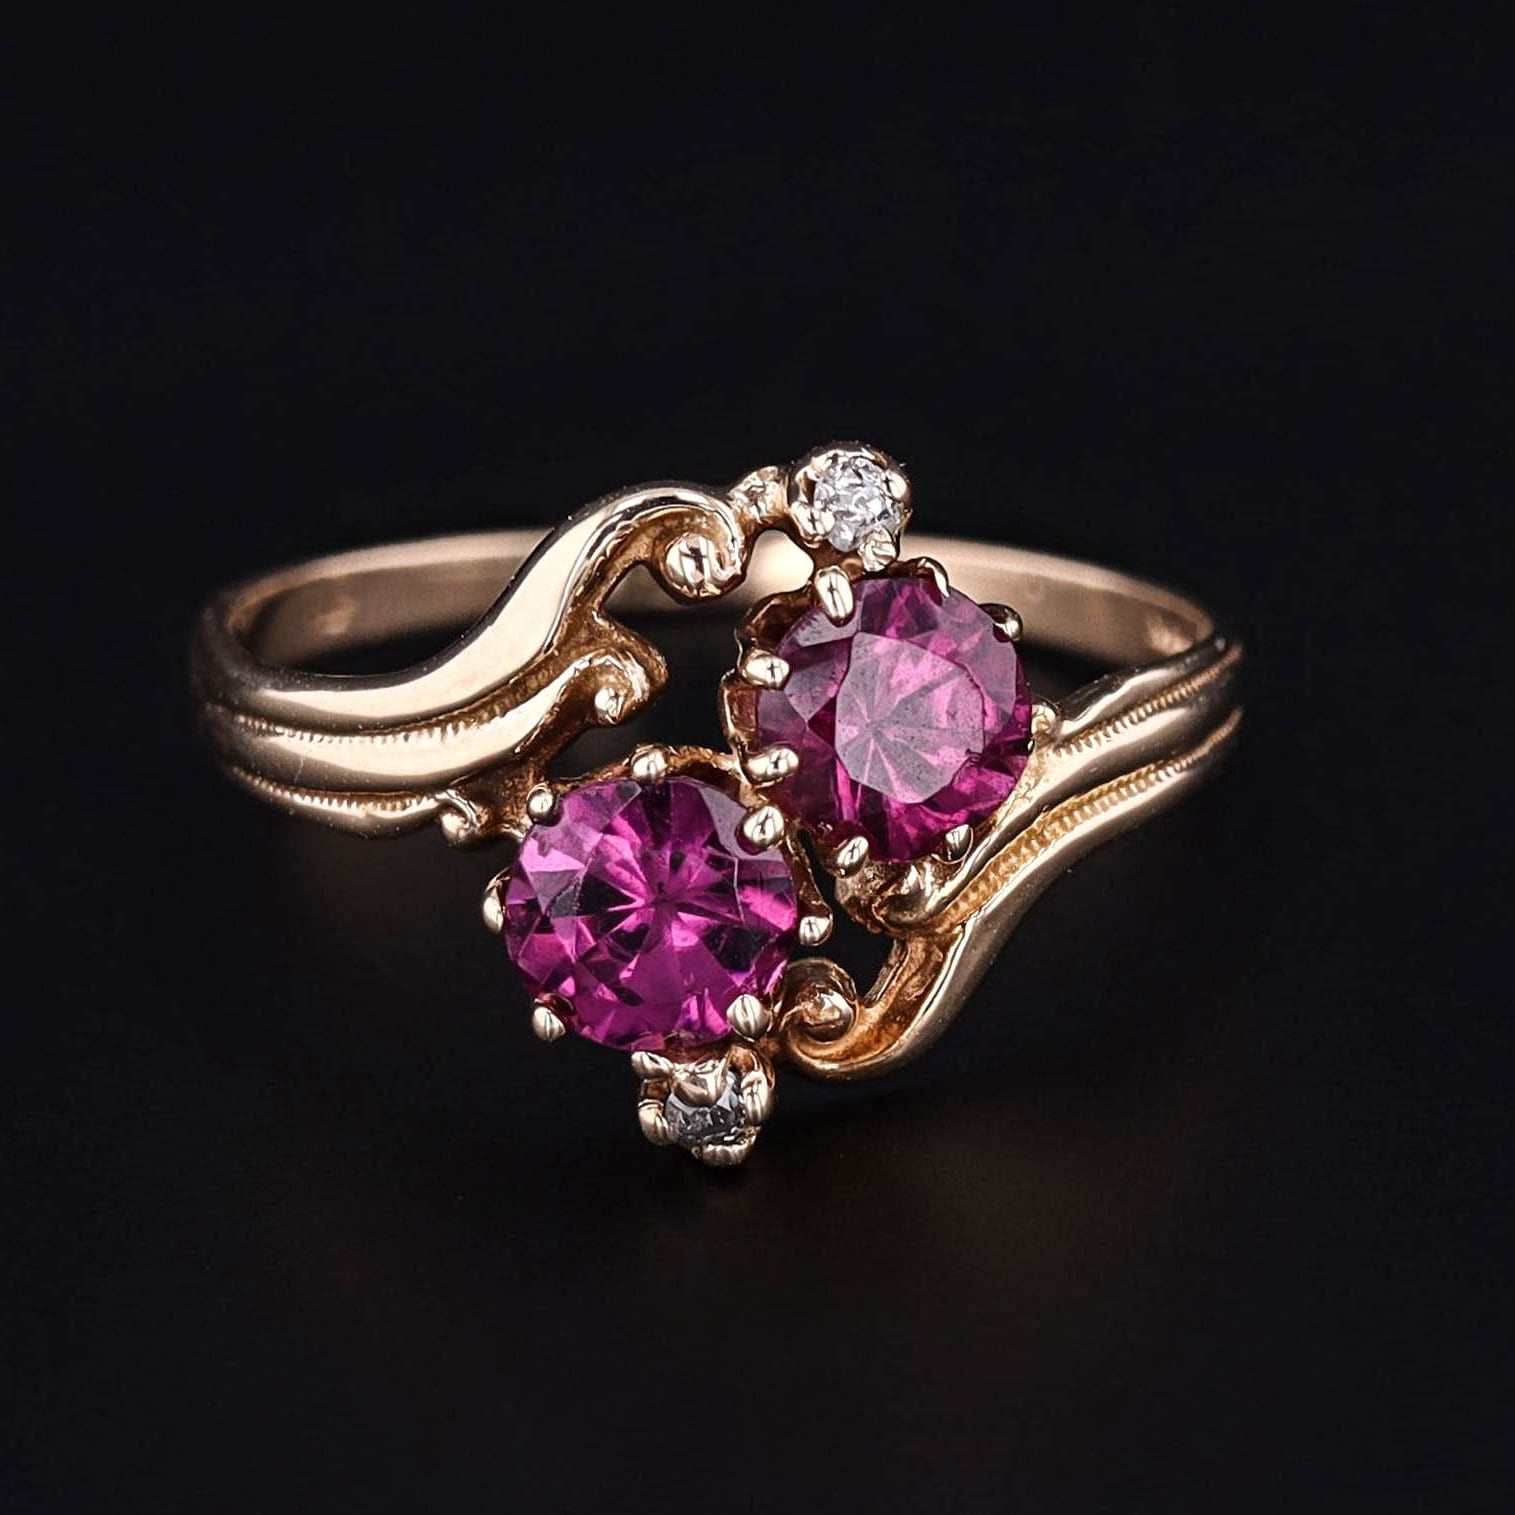 Antique Garnet Ring | 14k Gold Almandine Garnet & Diamond Ring 